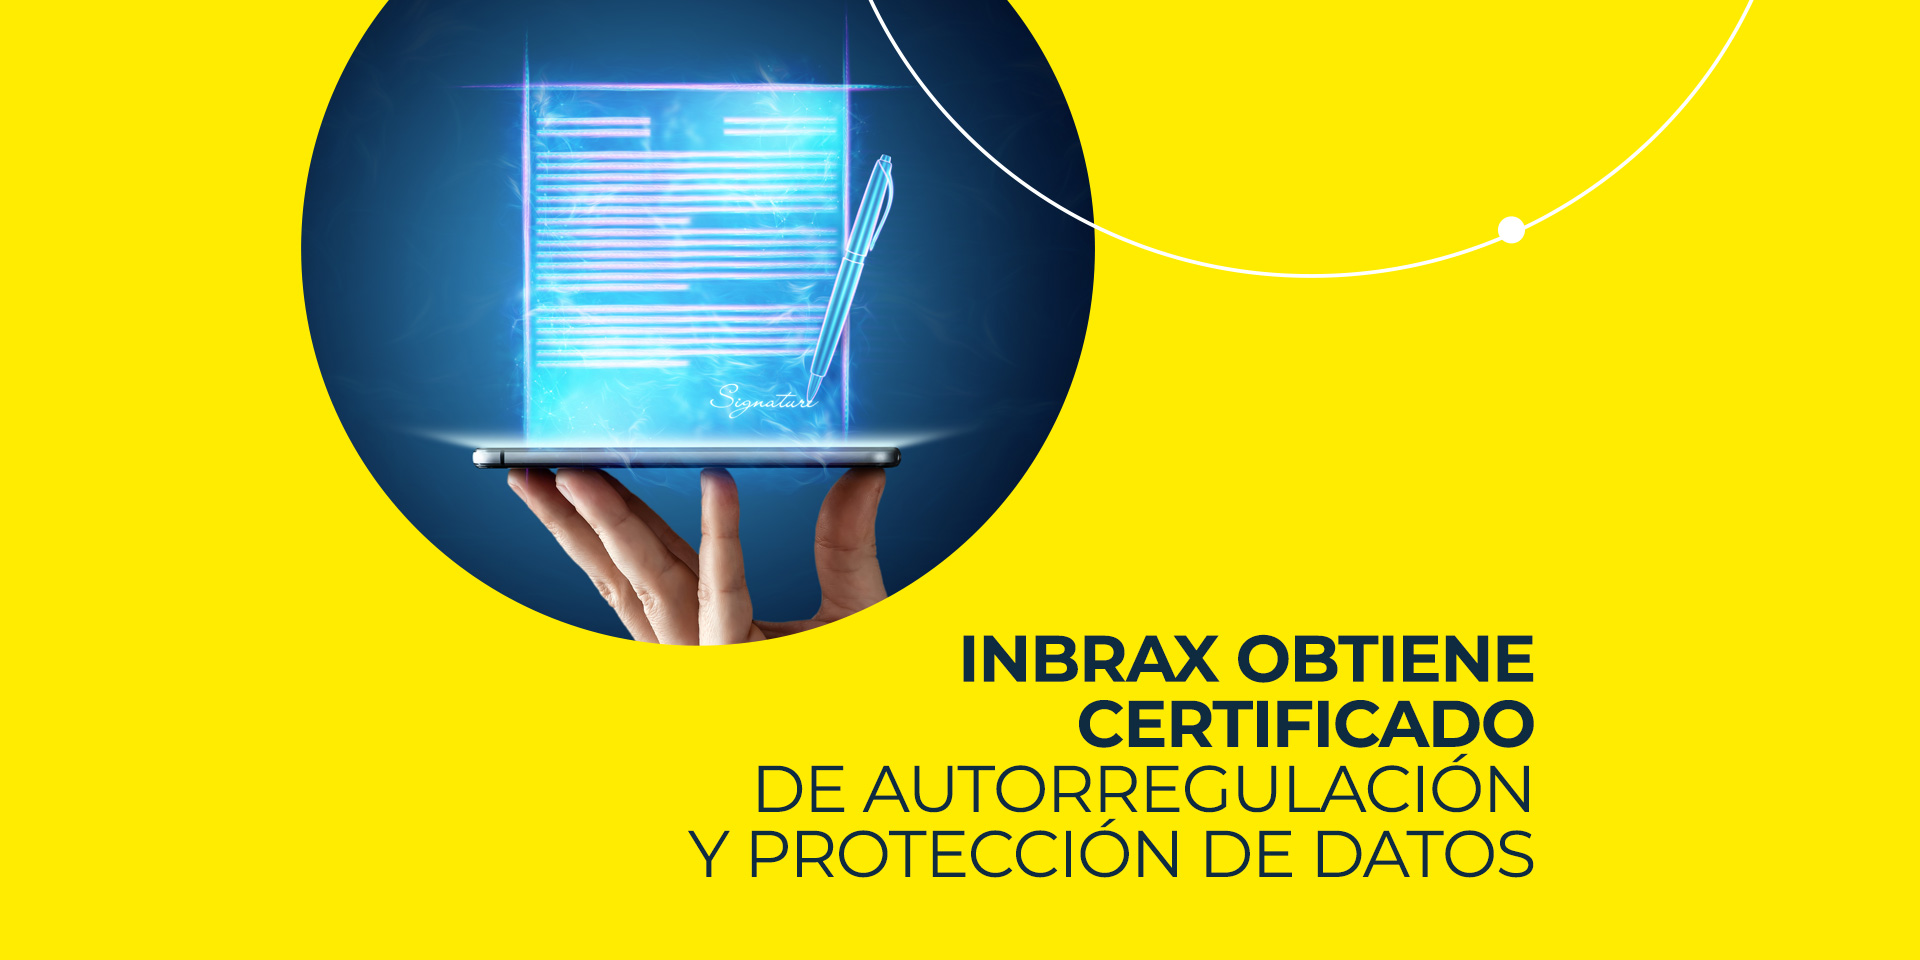 Inbrax obtiene certificado de autorregulación y protección de datos